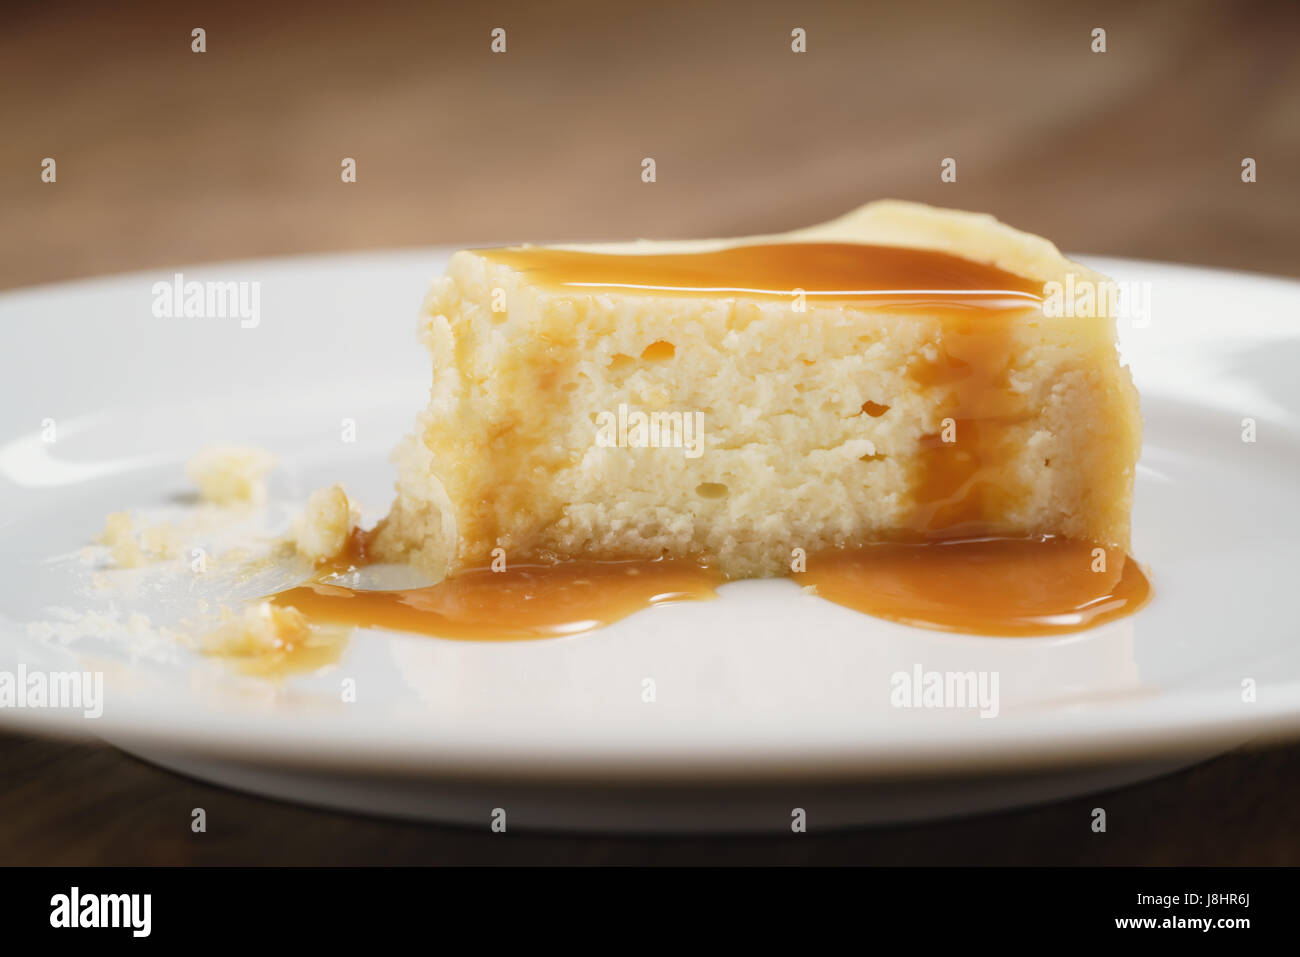 Cheesecake con salsa de caramelo en la placa closeup comido Foto de stock